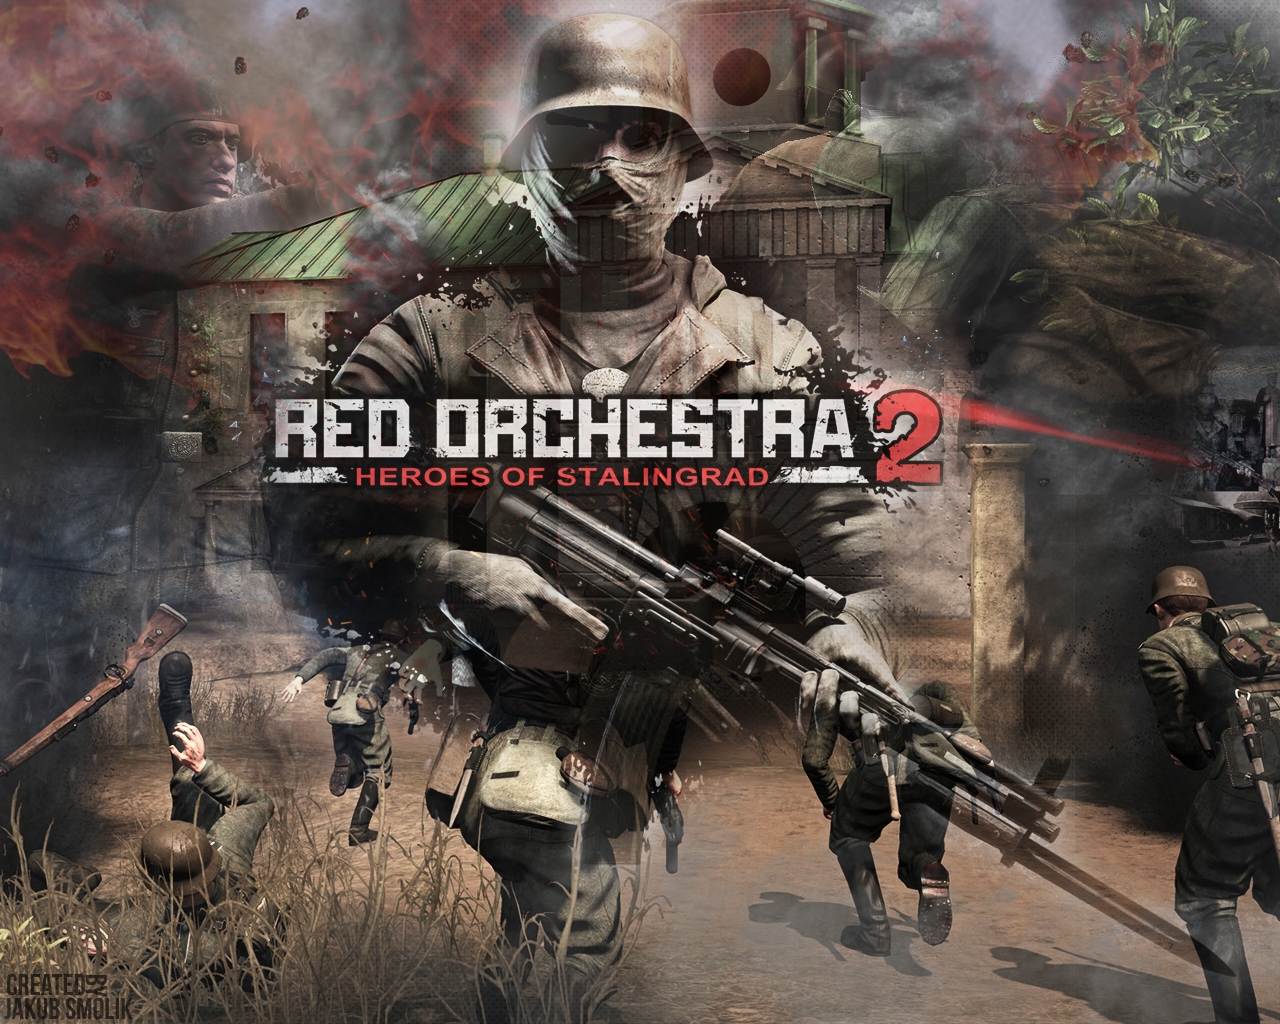 Red Orchestra by sillverdesigns on DeviantArt